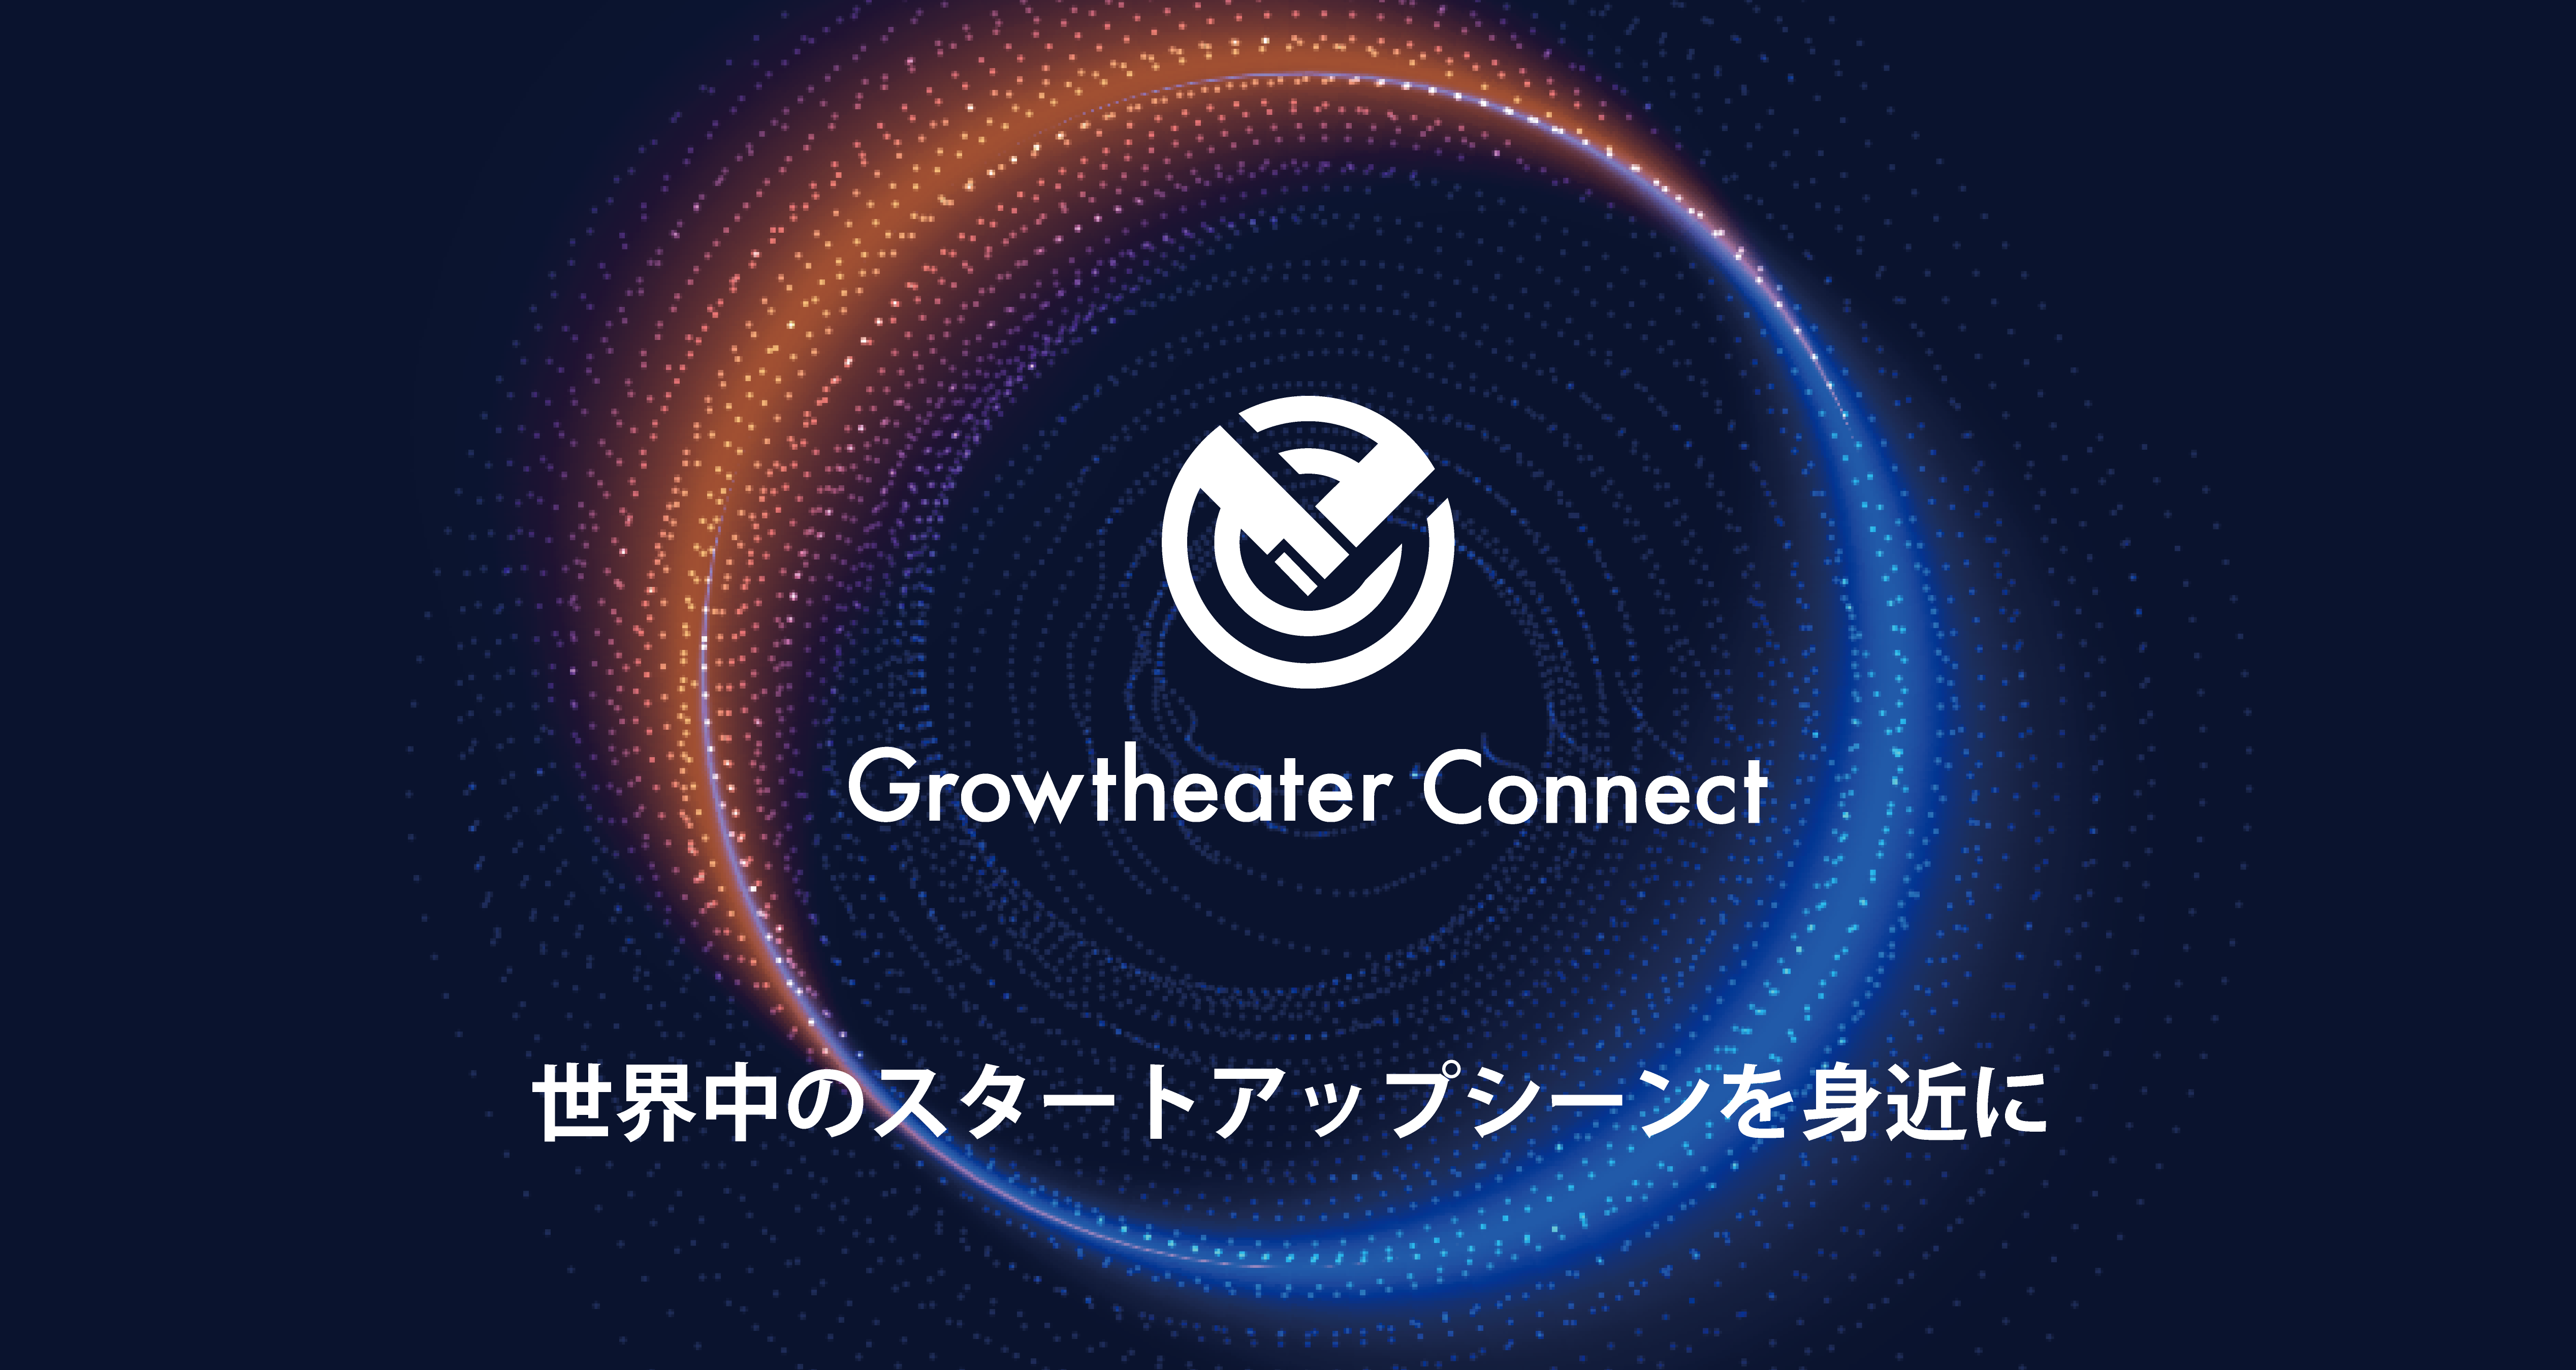 海外企業との提携に結びつく、ニューノーマル時代の海外スタートアップ 情報メディア「Growtheater Connect」の提供開始